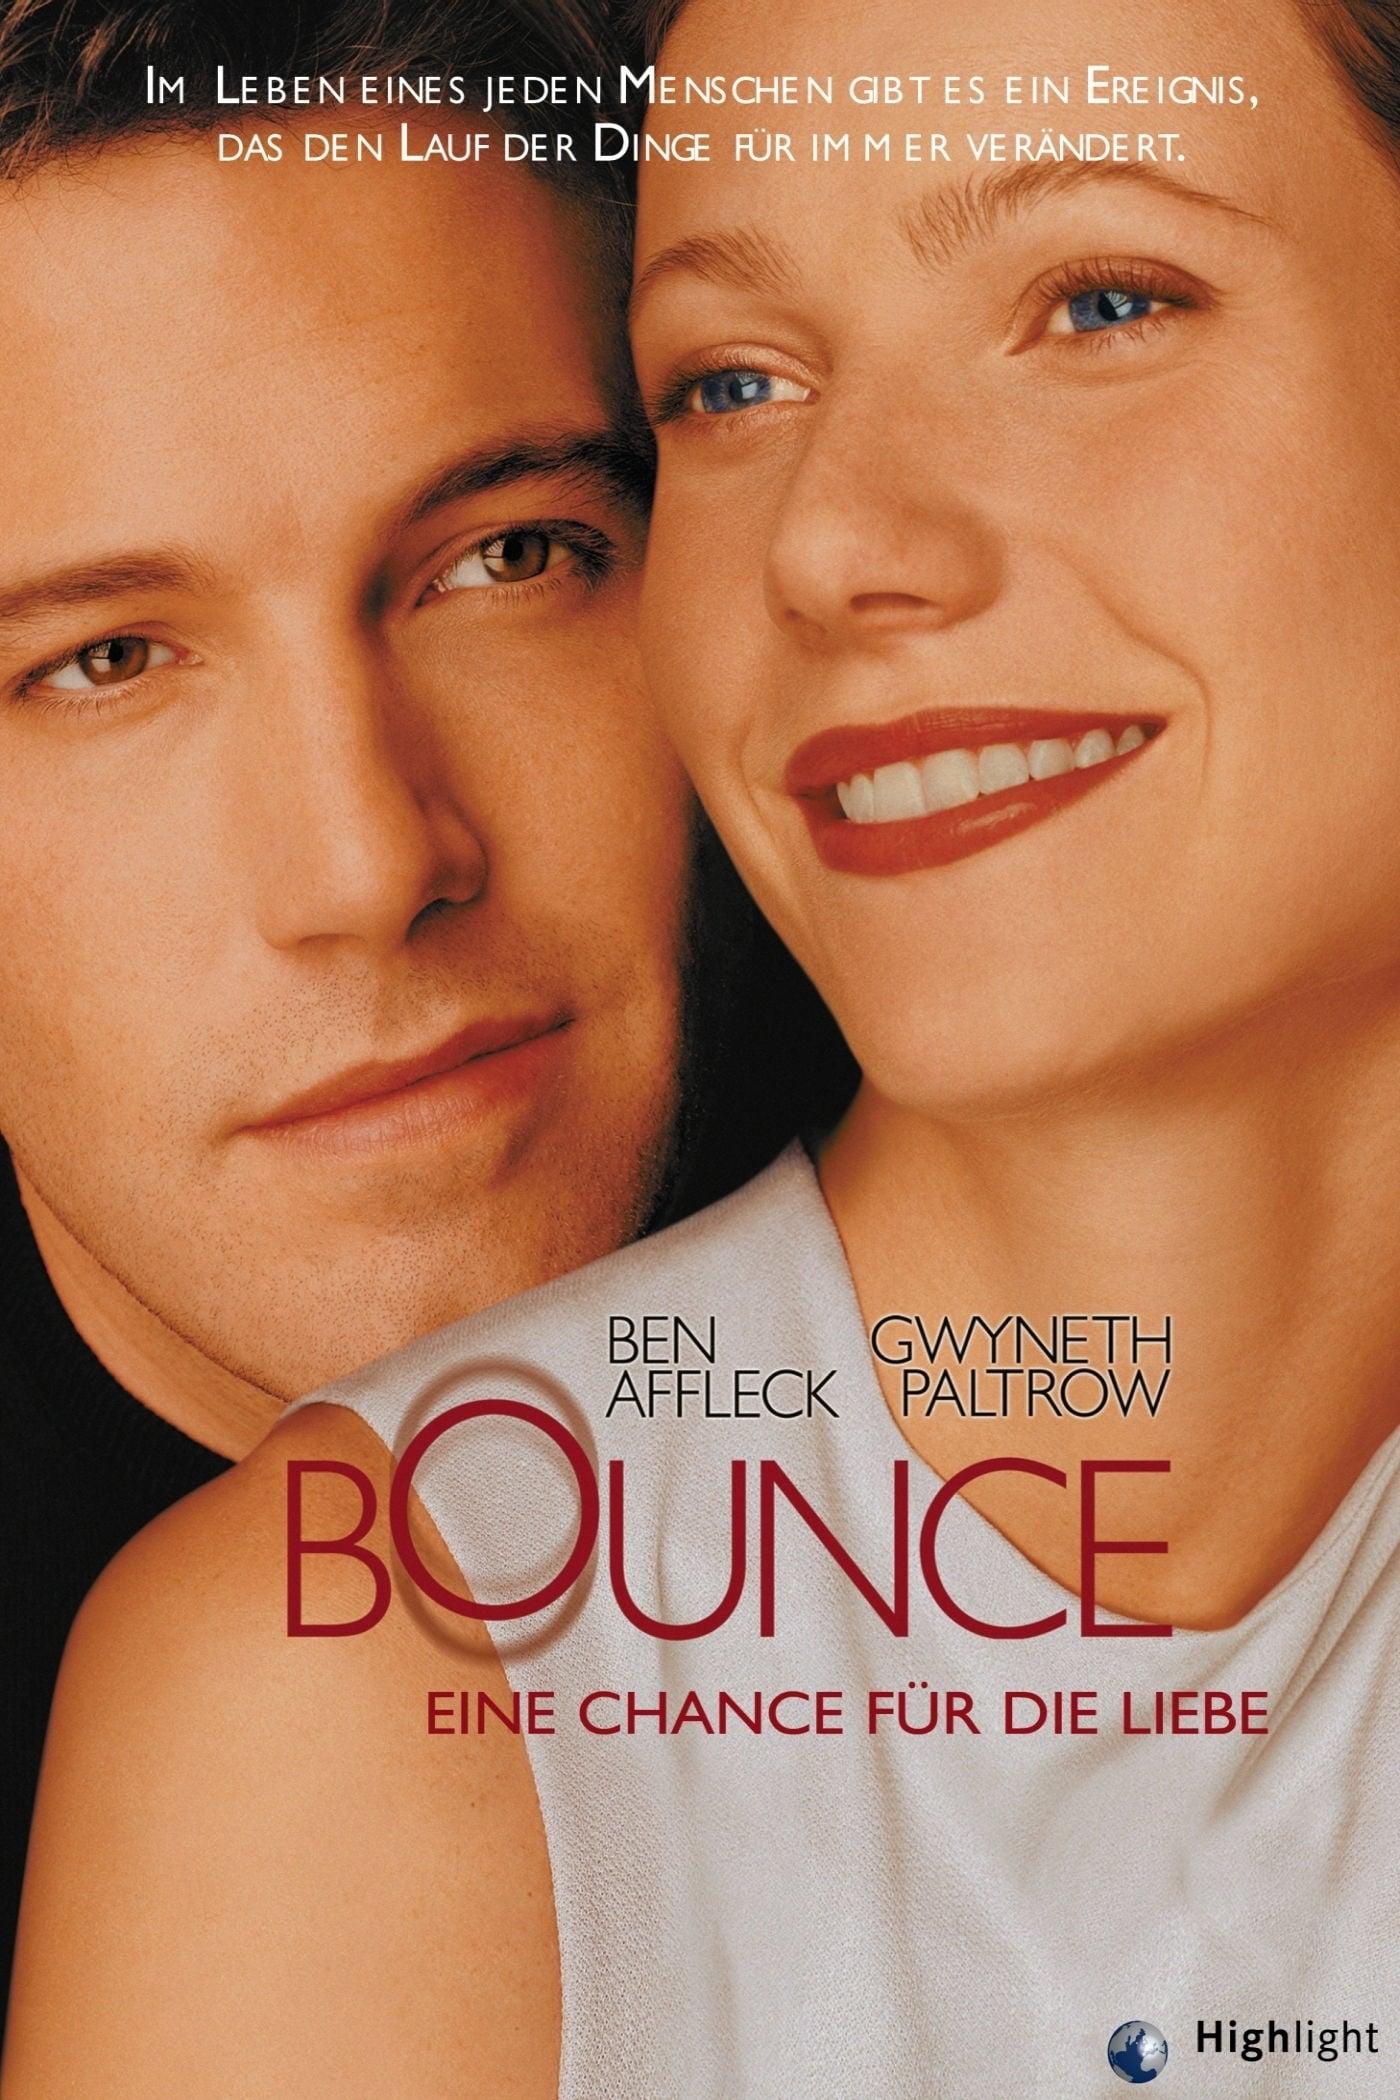 Bounce - Eine Chance für die Liebe poster